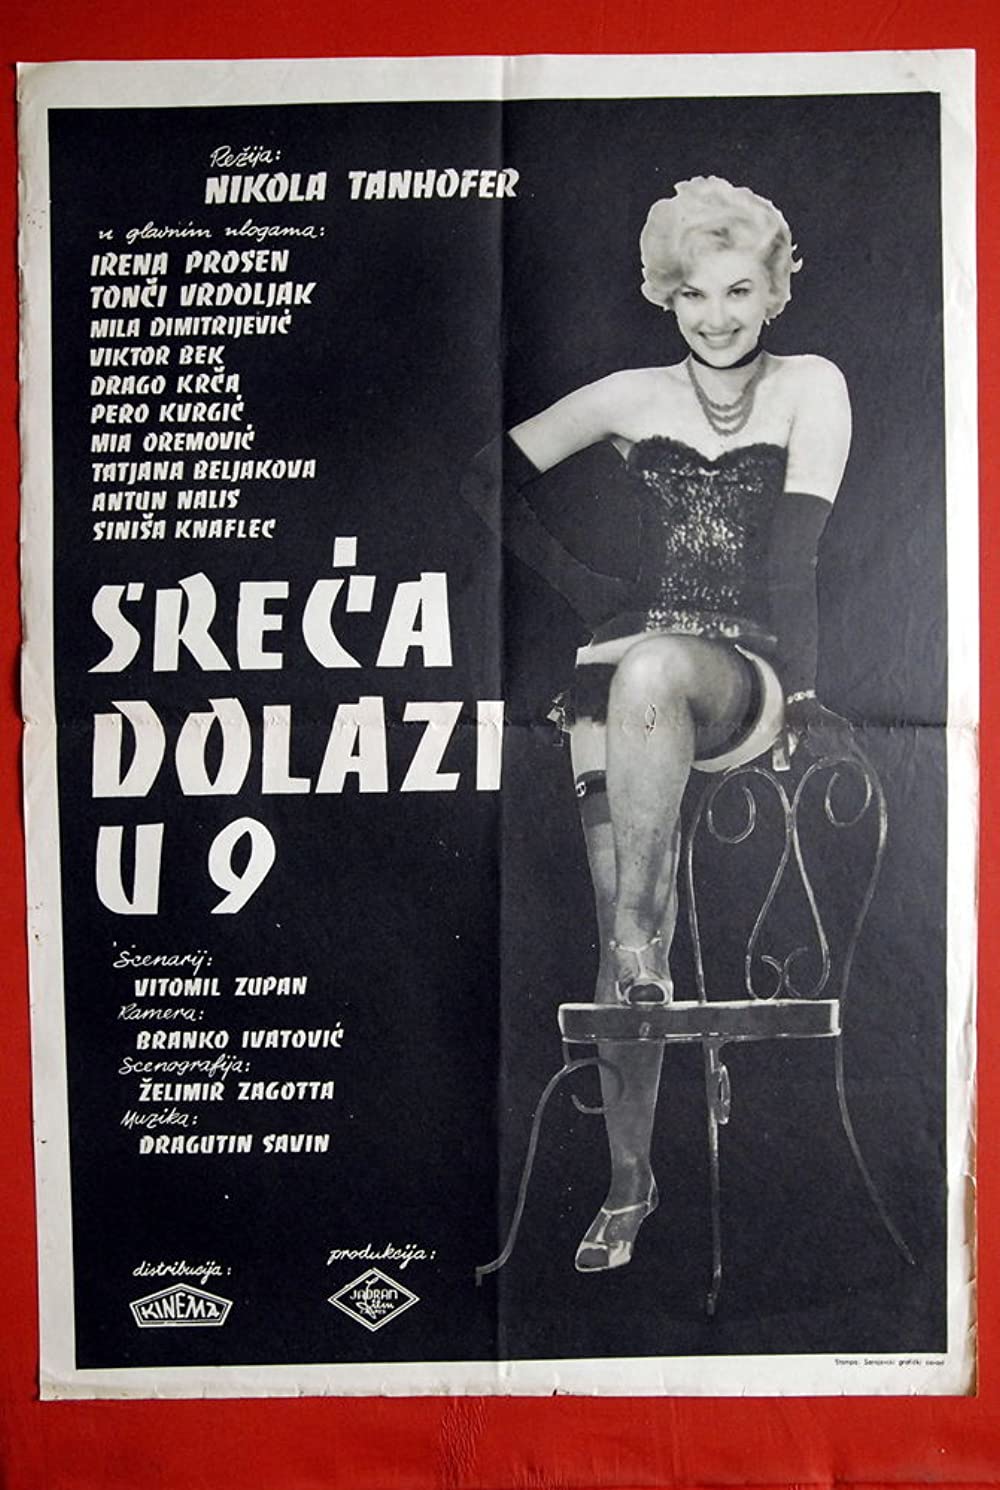 Постер к фильму «Счастье приходит в 9» (Sreca dolazi u 9), 1961